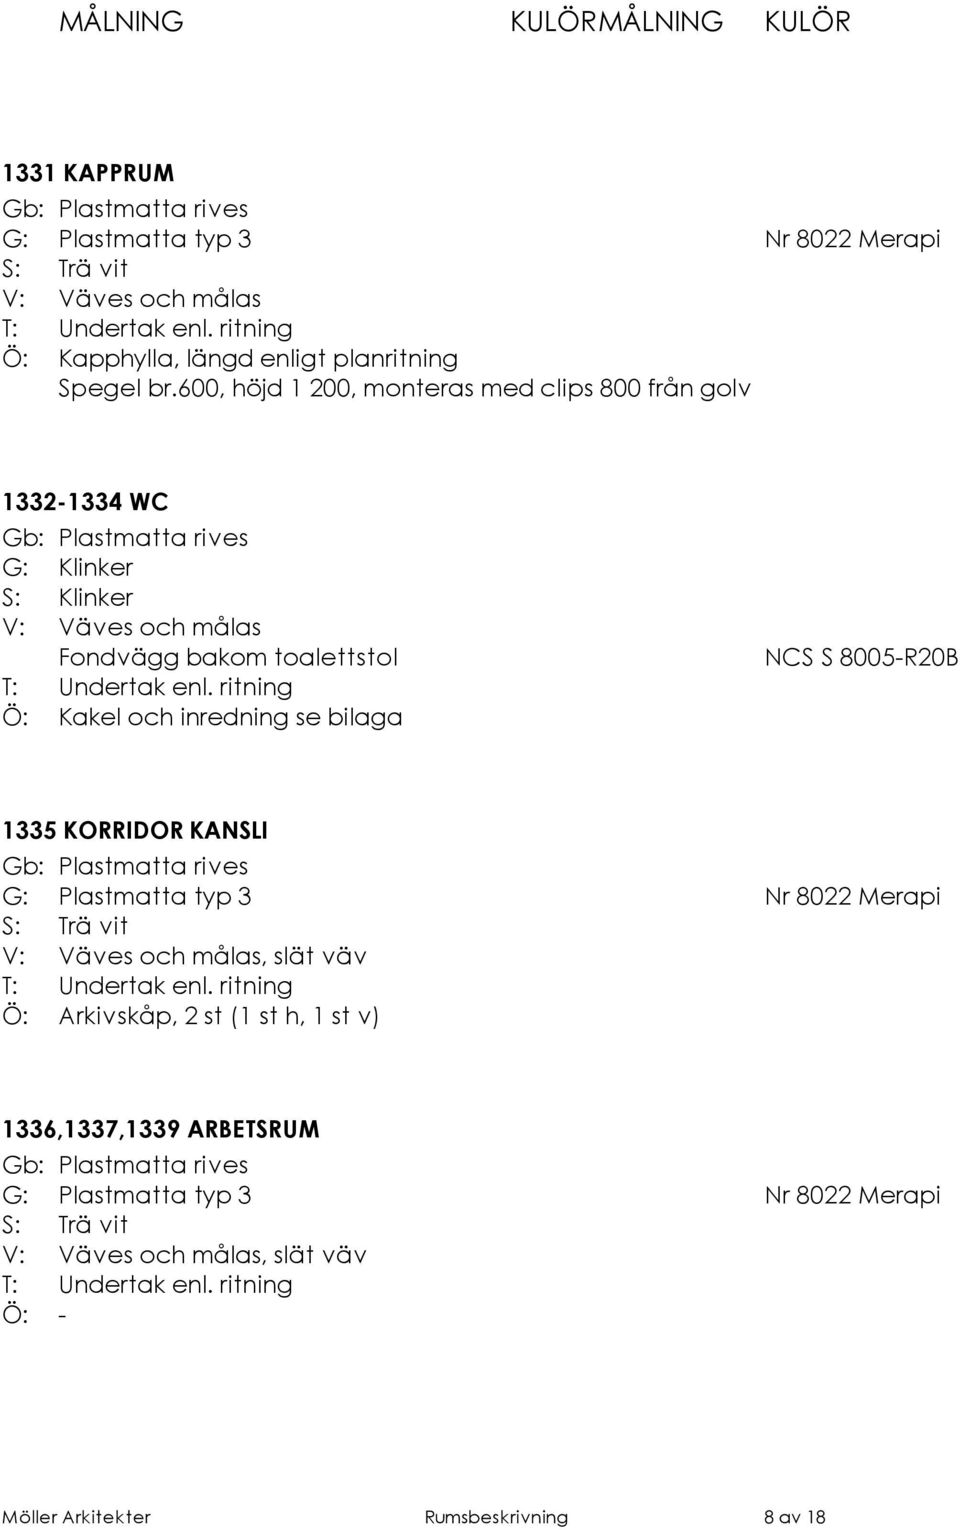 Kakel och inredning se bilaga NCS S 8005-R20B 1335 KORRIDOR KANSLI G: Plastmatta typ 3 Nr 8022 Merapi, slät väv Ö: